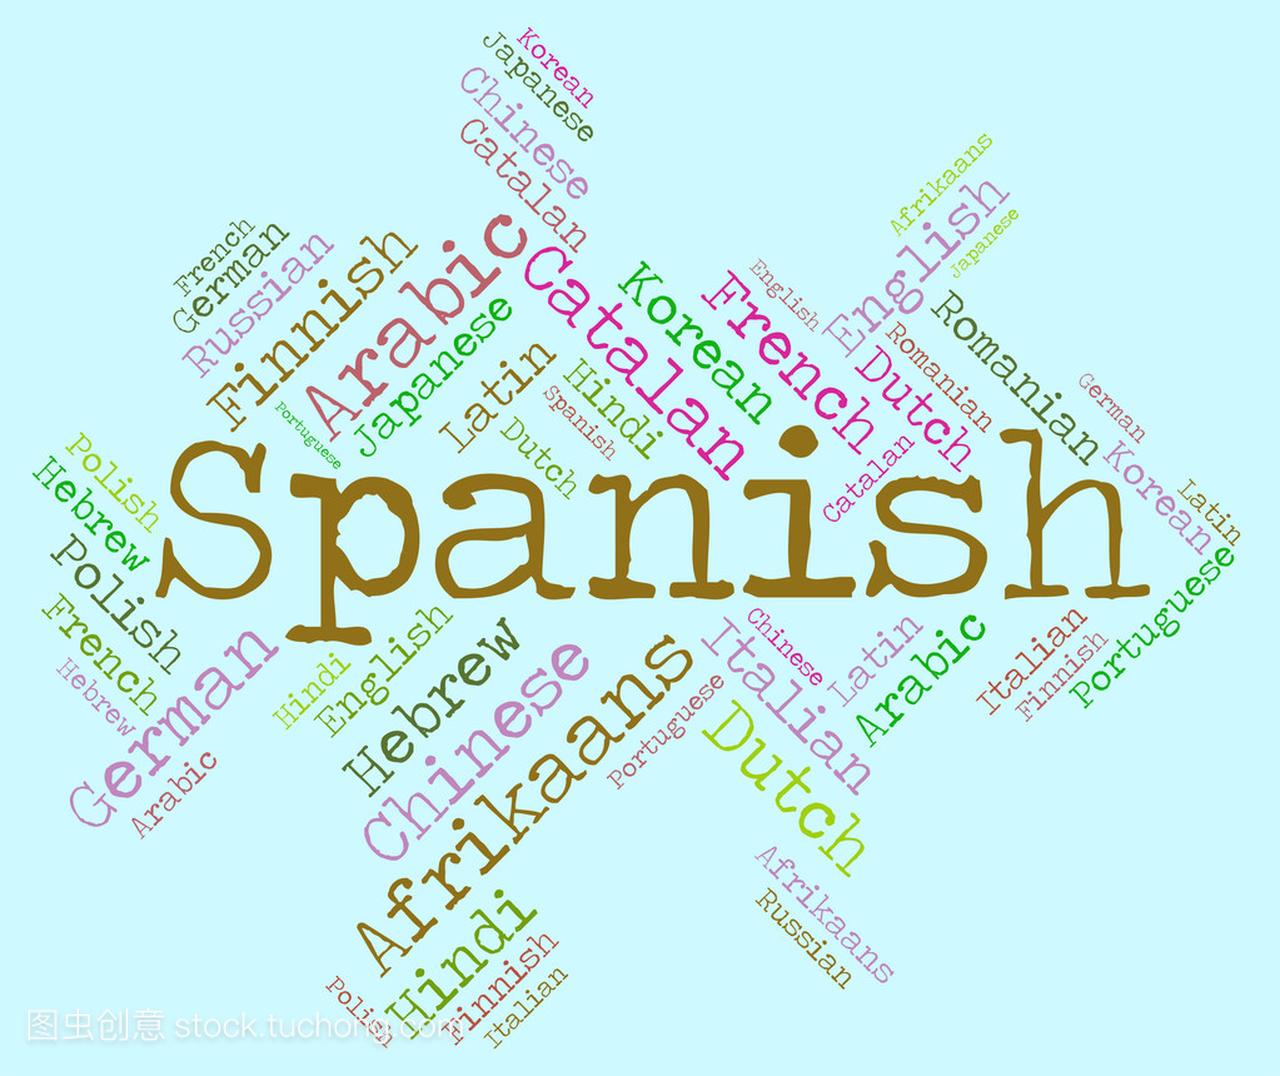 西班牙语言指示词汇术语和 Wordcloud